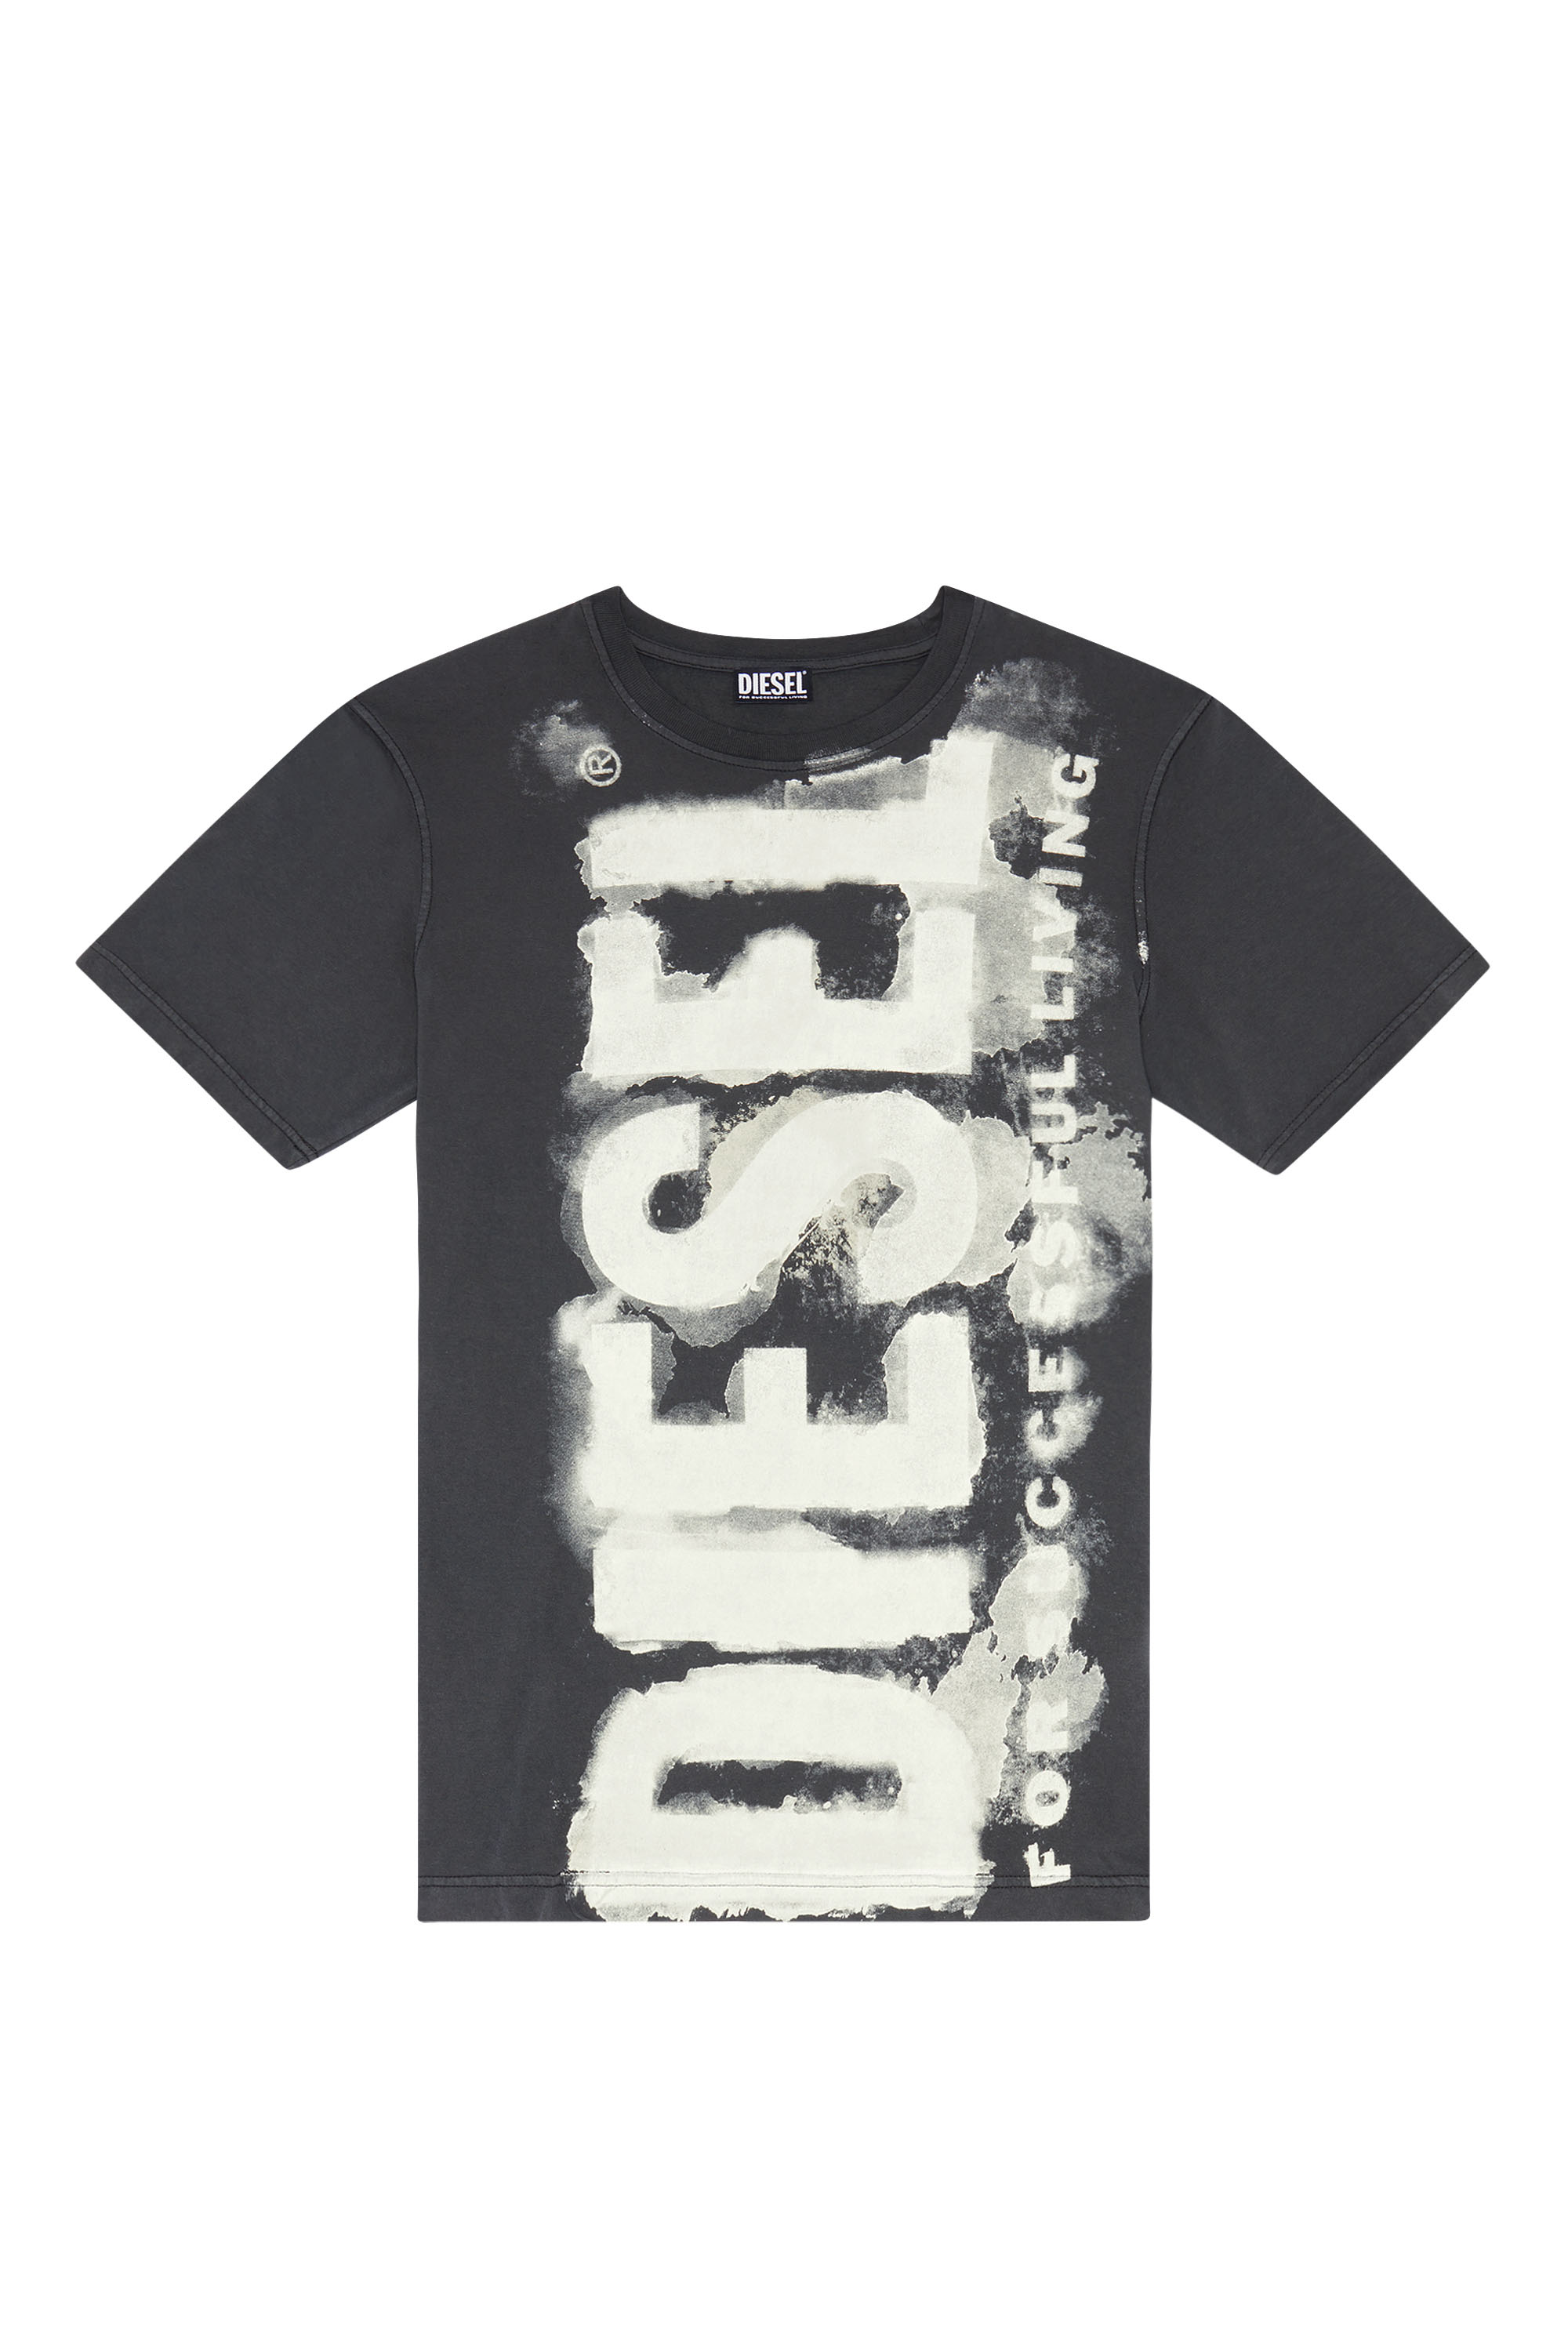 Tee-shirt DIESEL 2 Tee-shirts Diesel Homme M Homme Vêtements Diesel Homme Tee-shirts & Polos Diesel Homme Tee-shirts Diesel Homme gris 